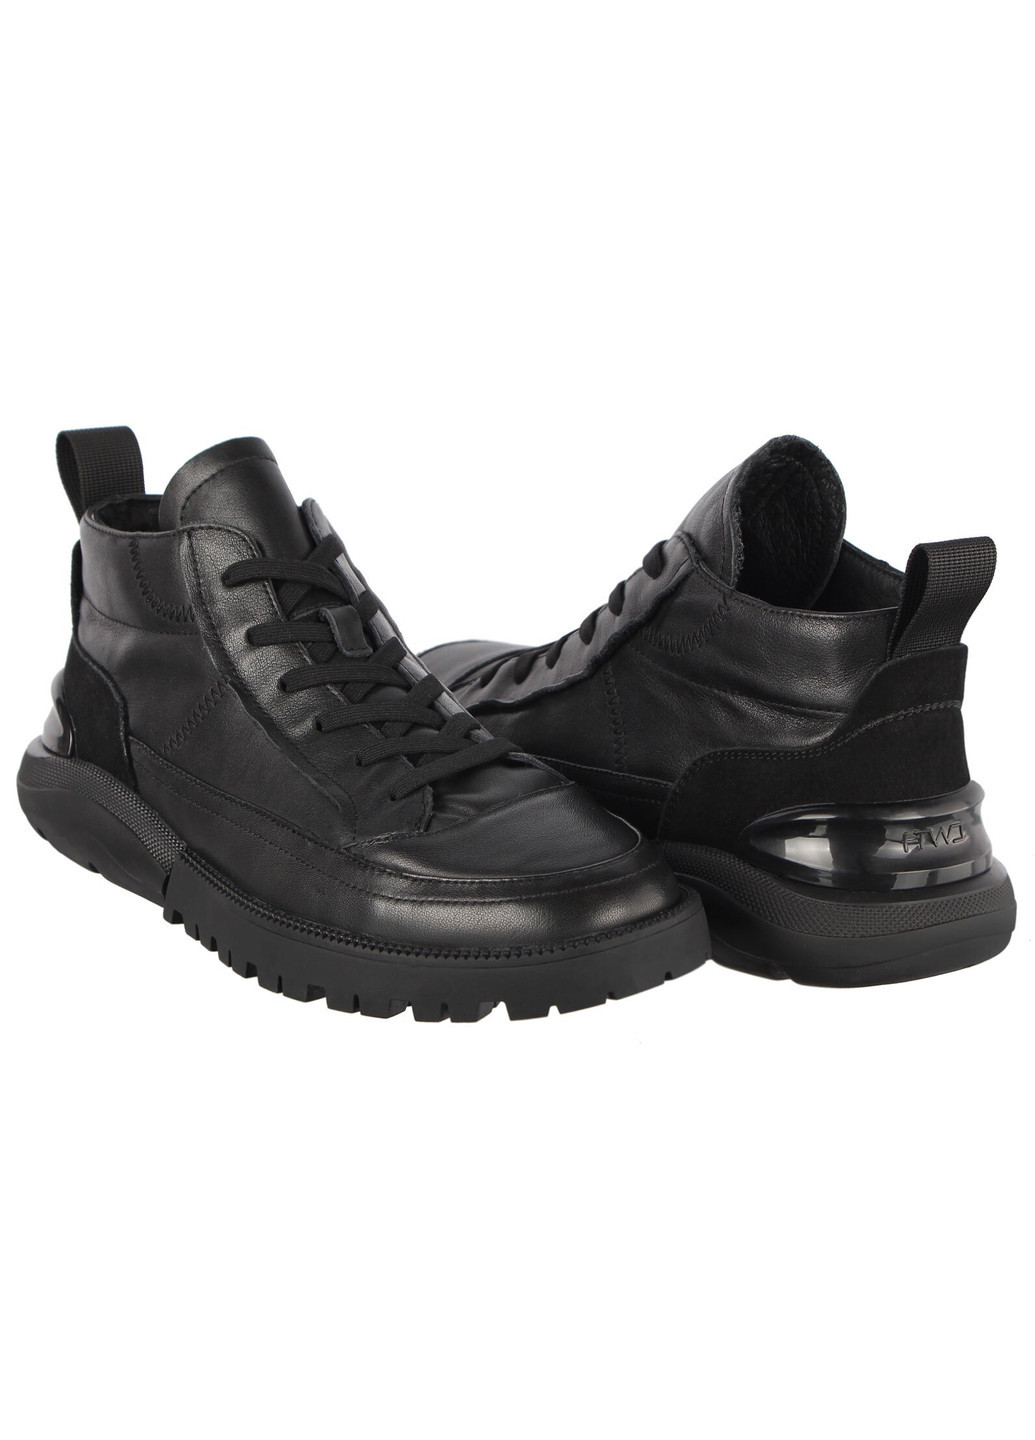 Черные осенние мужские ботинки 196372 Buts